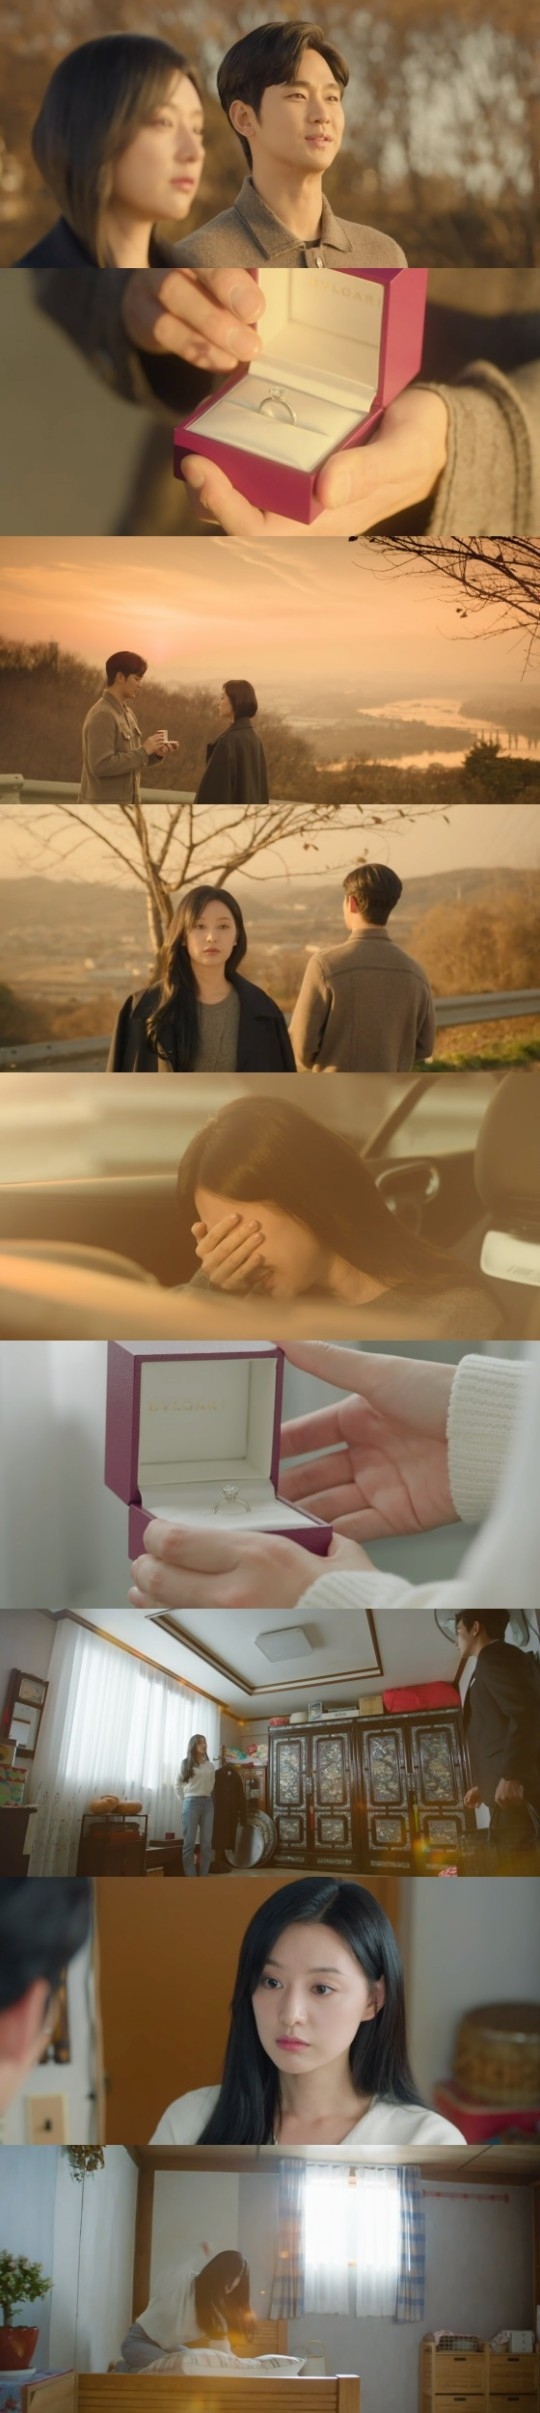 tvN 토일드라마 ‘눈물의 여왕’. 사진|tvN